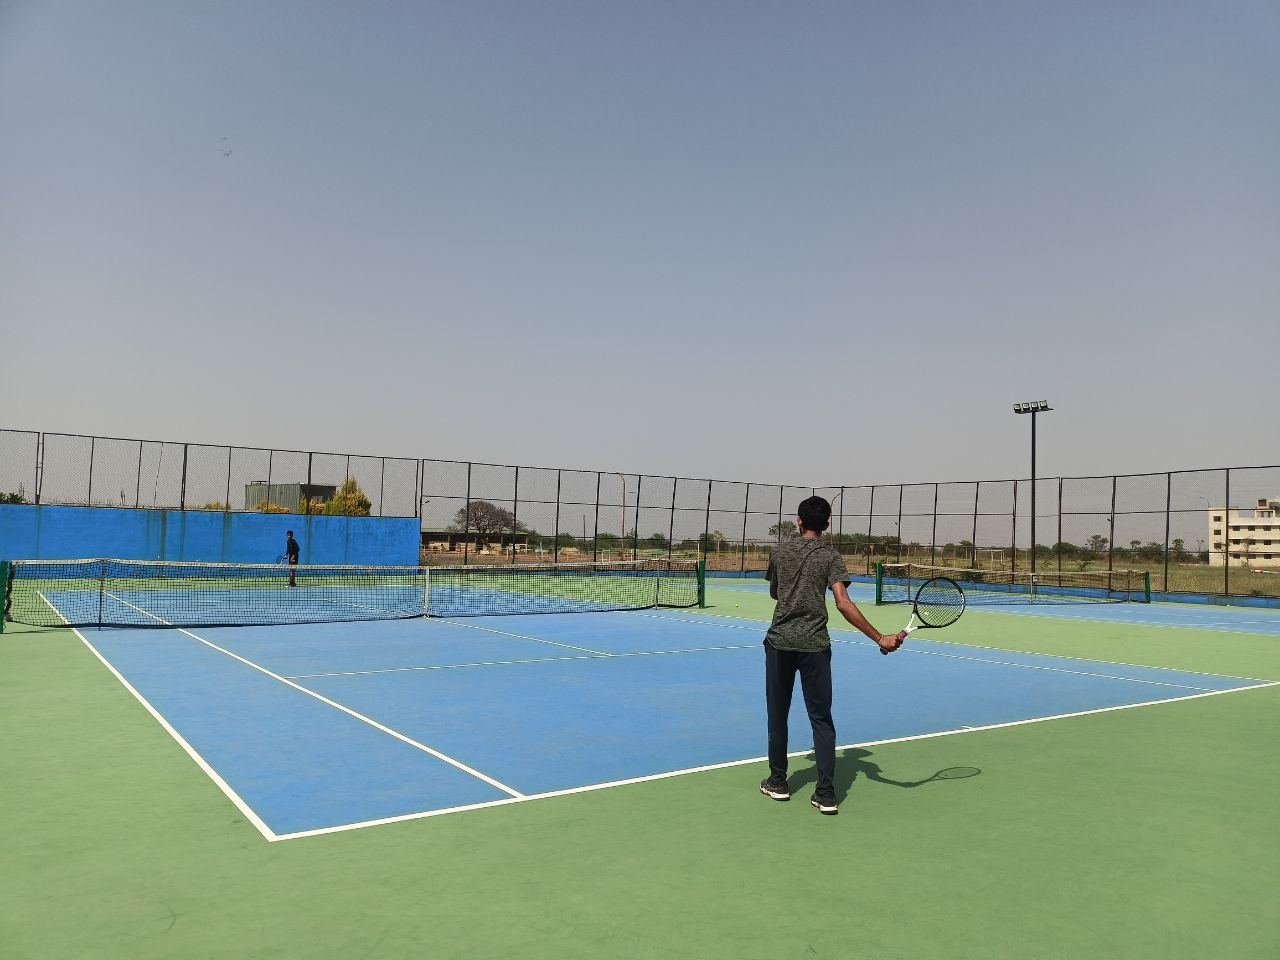 विदिशा में अभा टेनिस संघ टैलेंट सब जूनियर सीरीज 28 से